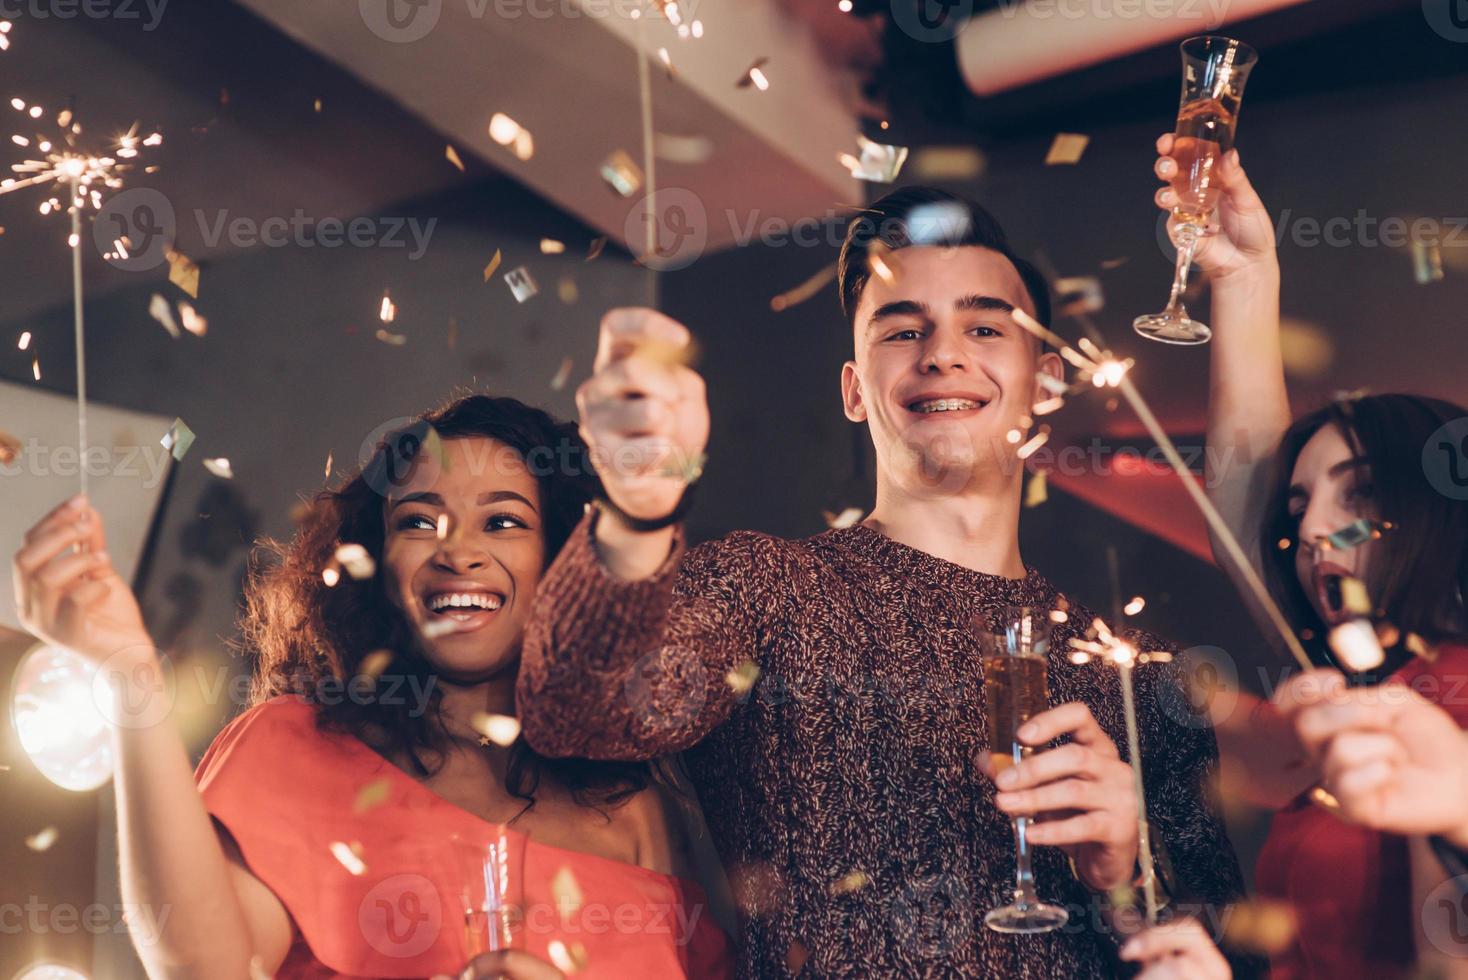 gioioso e felice. amici multirazziali festeggiano il nuovo anno e tengono in mano luci e bicchieri del Bengala con un drink foto